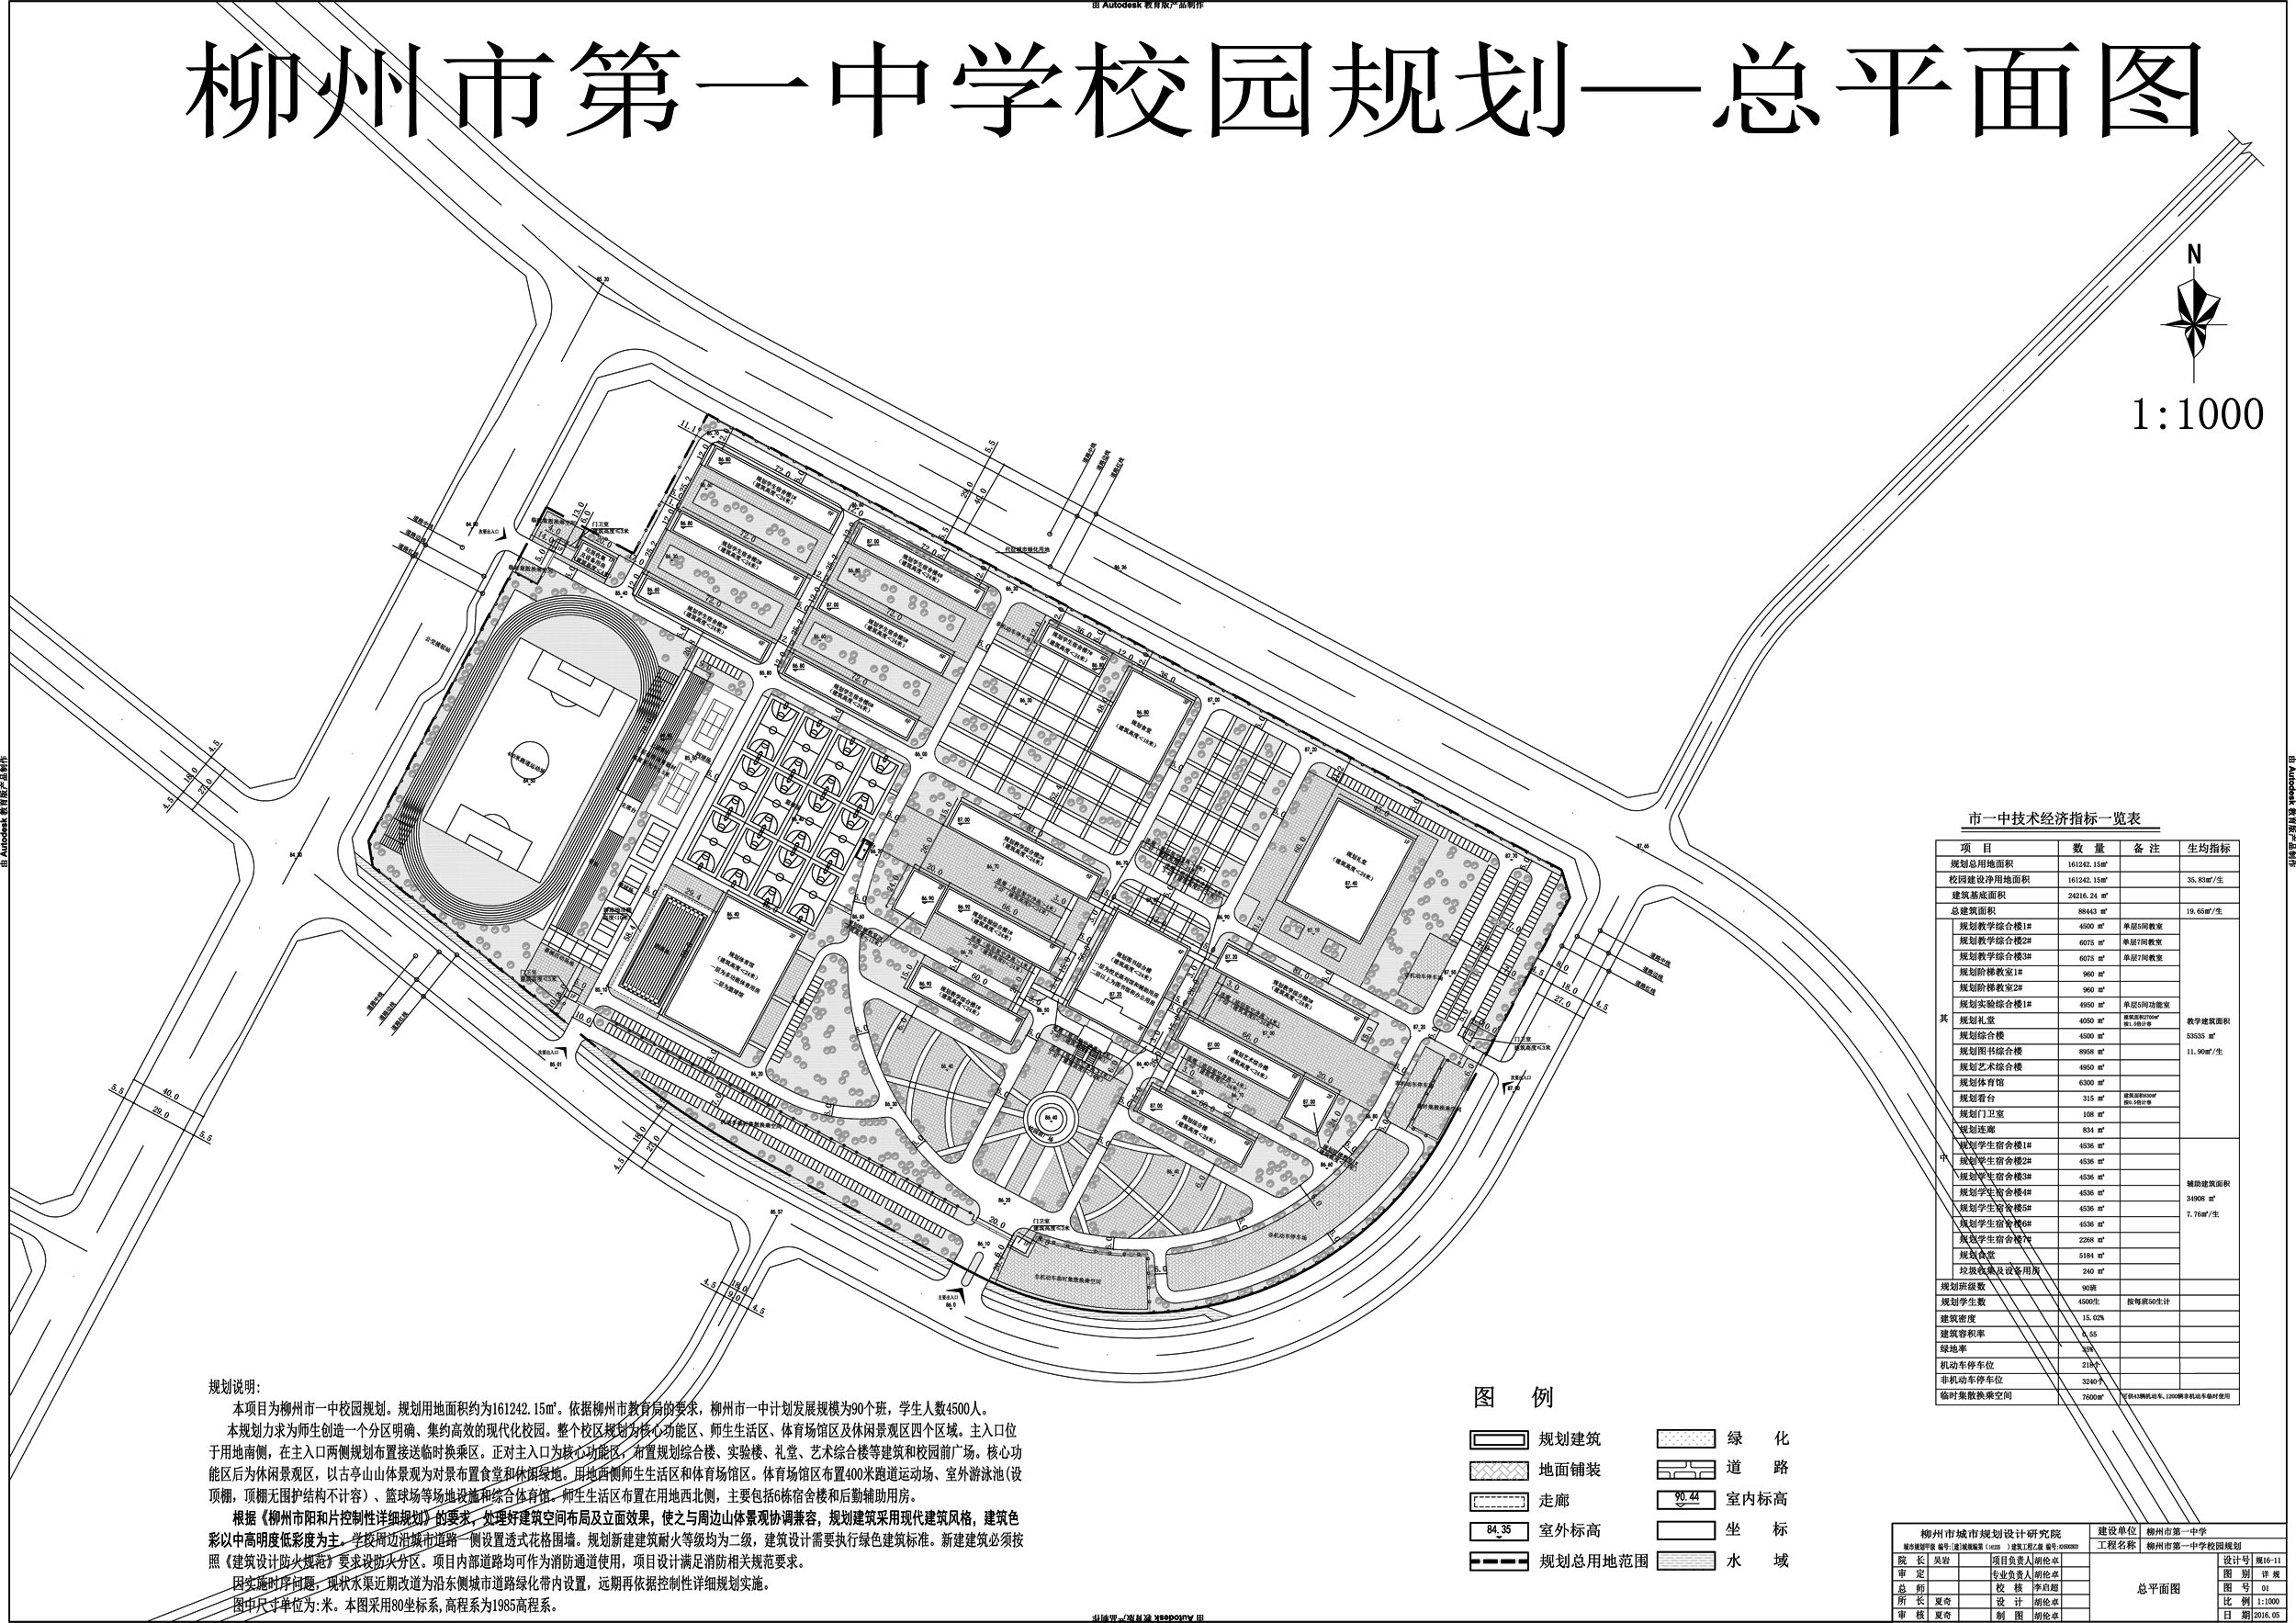 “柳州市三十二中学校园规划”规划总平（2016－0099#）已经我局批准 - 规划总平图批后公布 - 广西柳州市自然资源和规划局网站